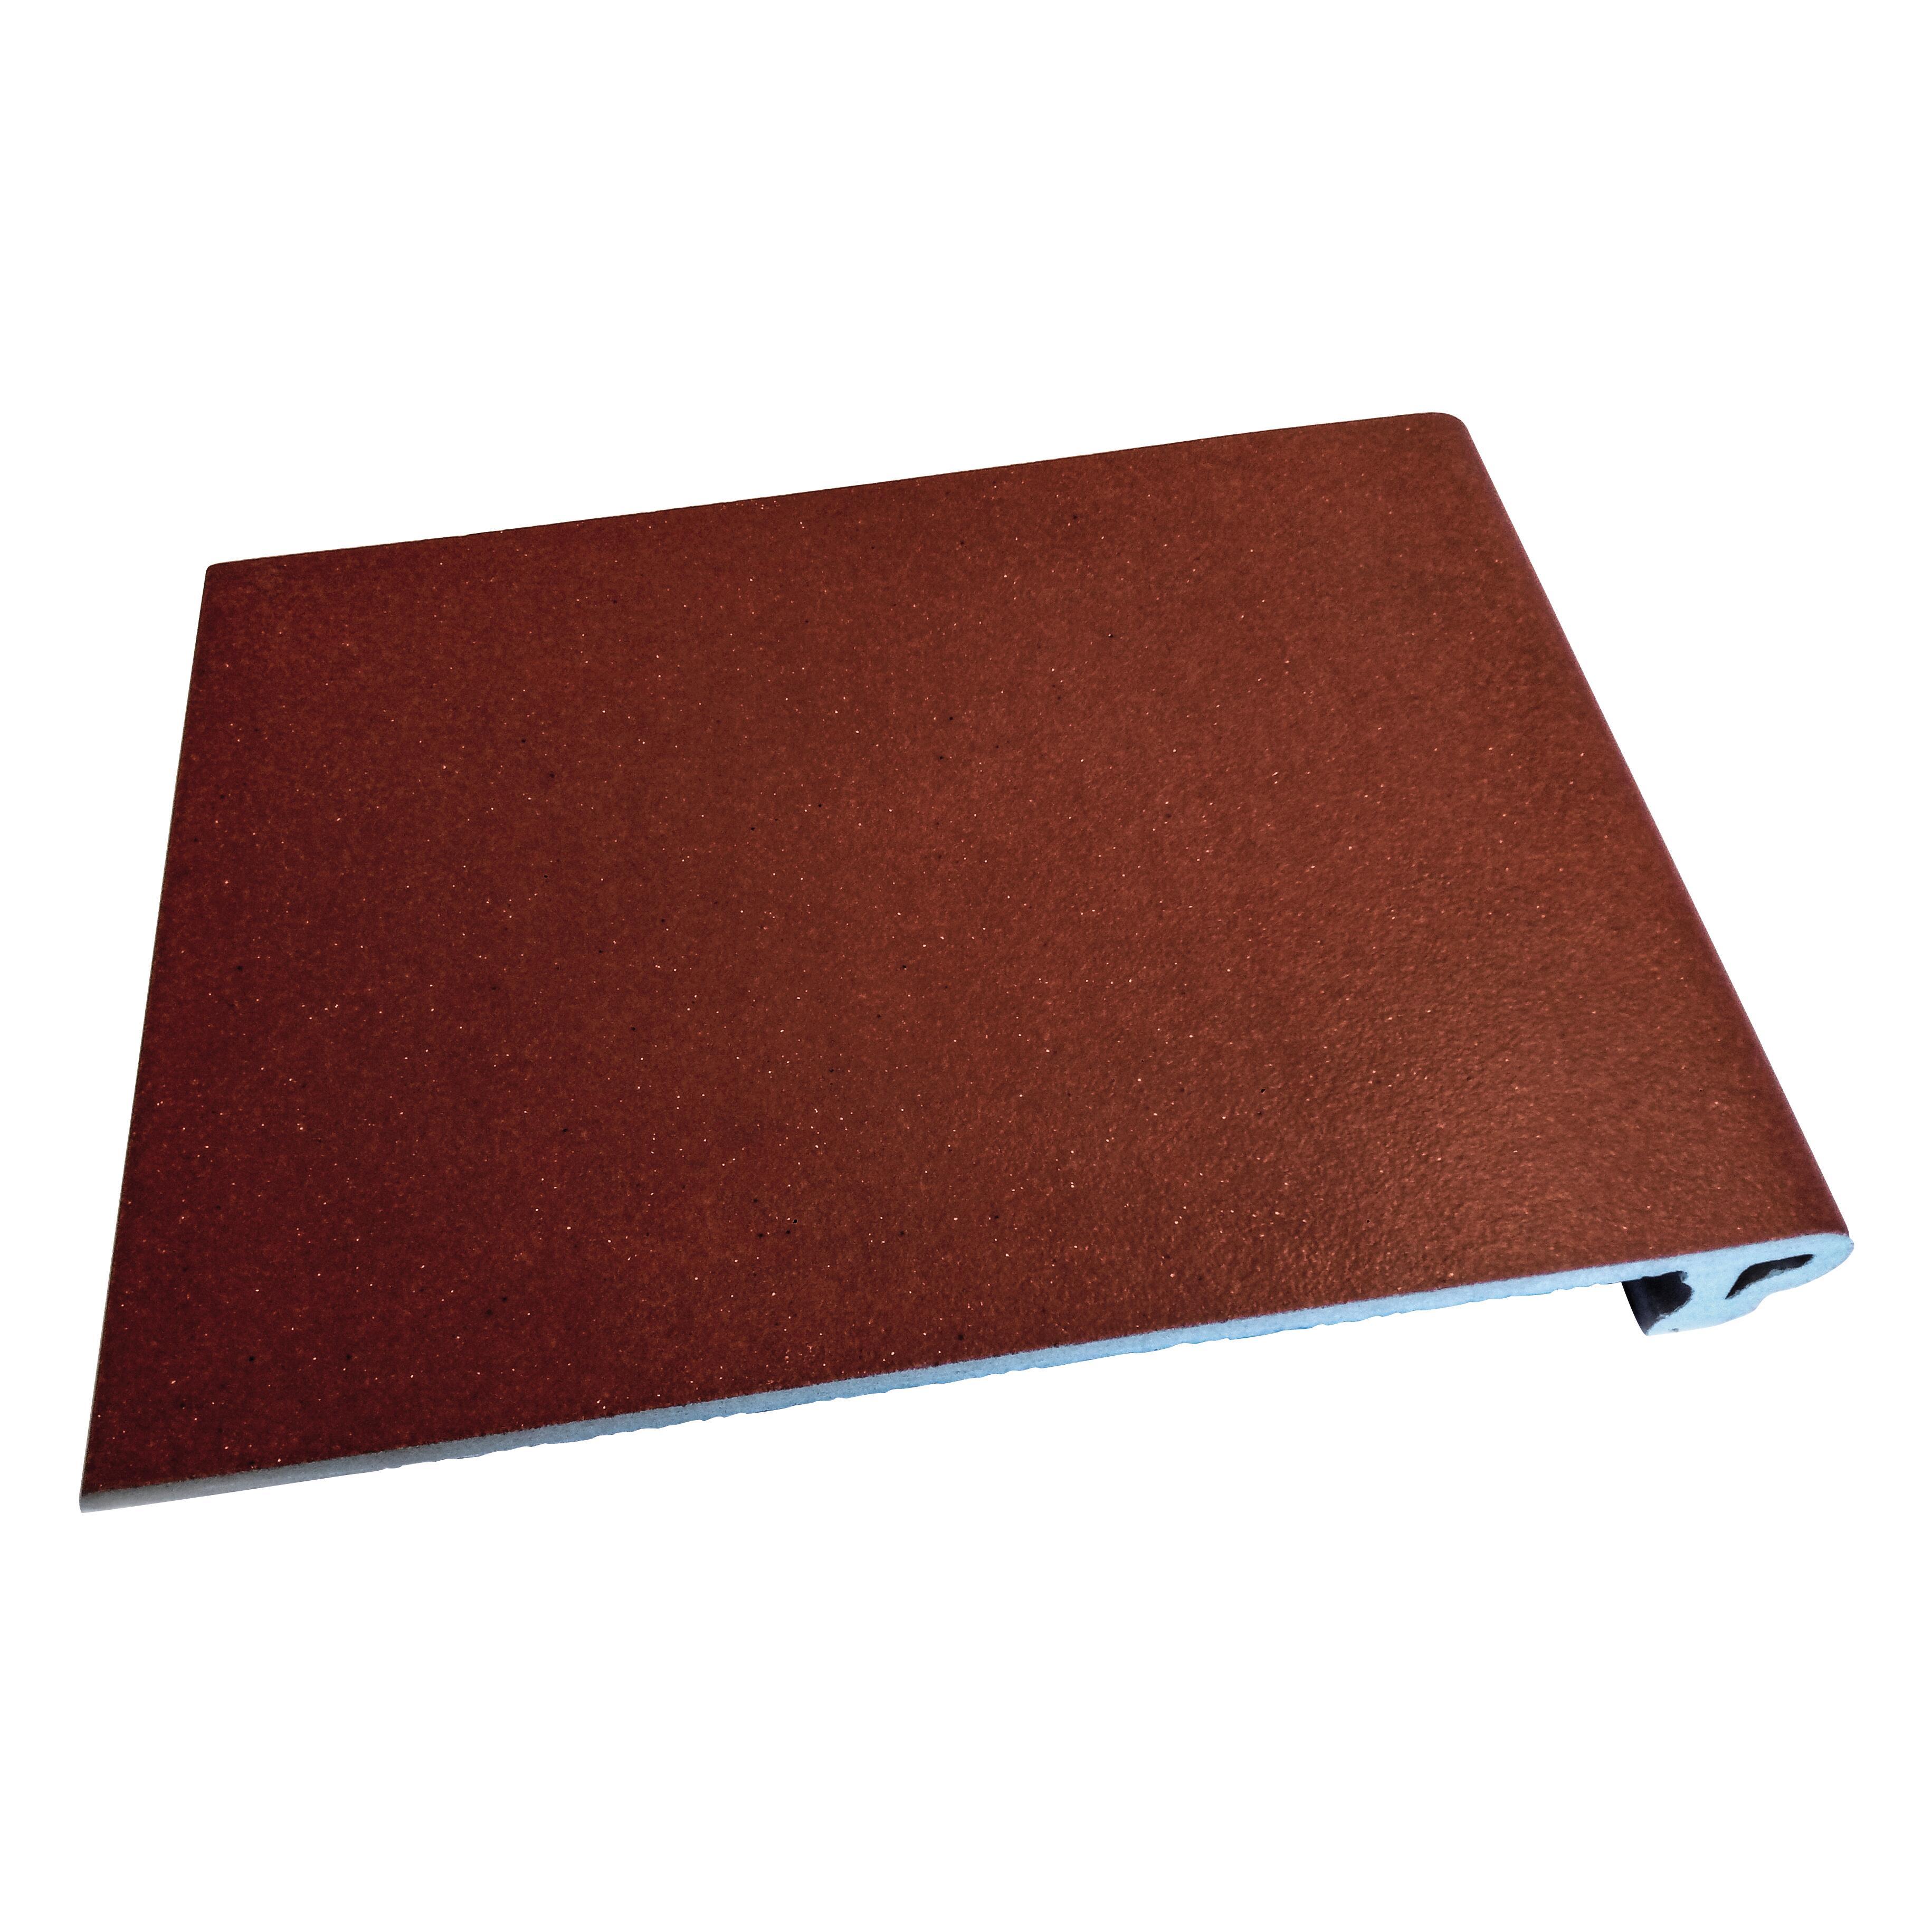 Piastrella da pavimento Klinker 26 x 35 cm sp. 12 mm PEI 2/5 rosso - 1